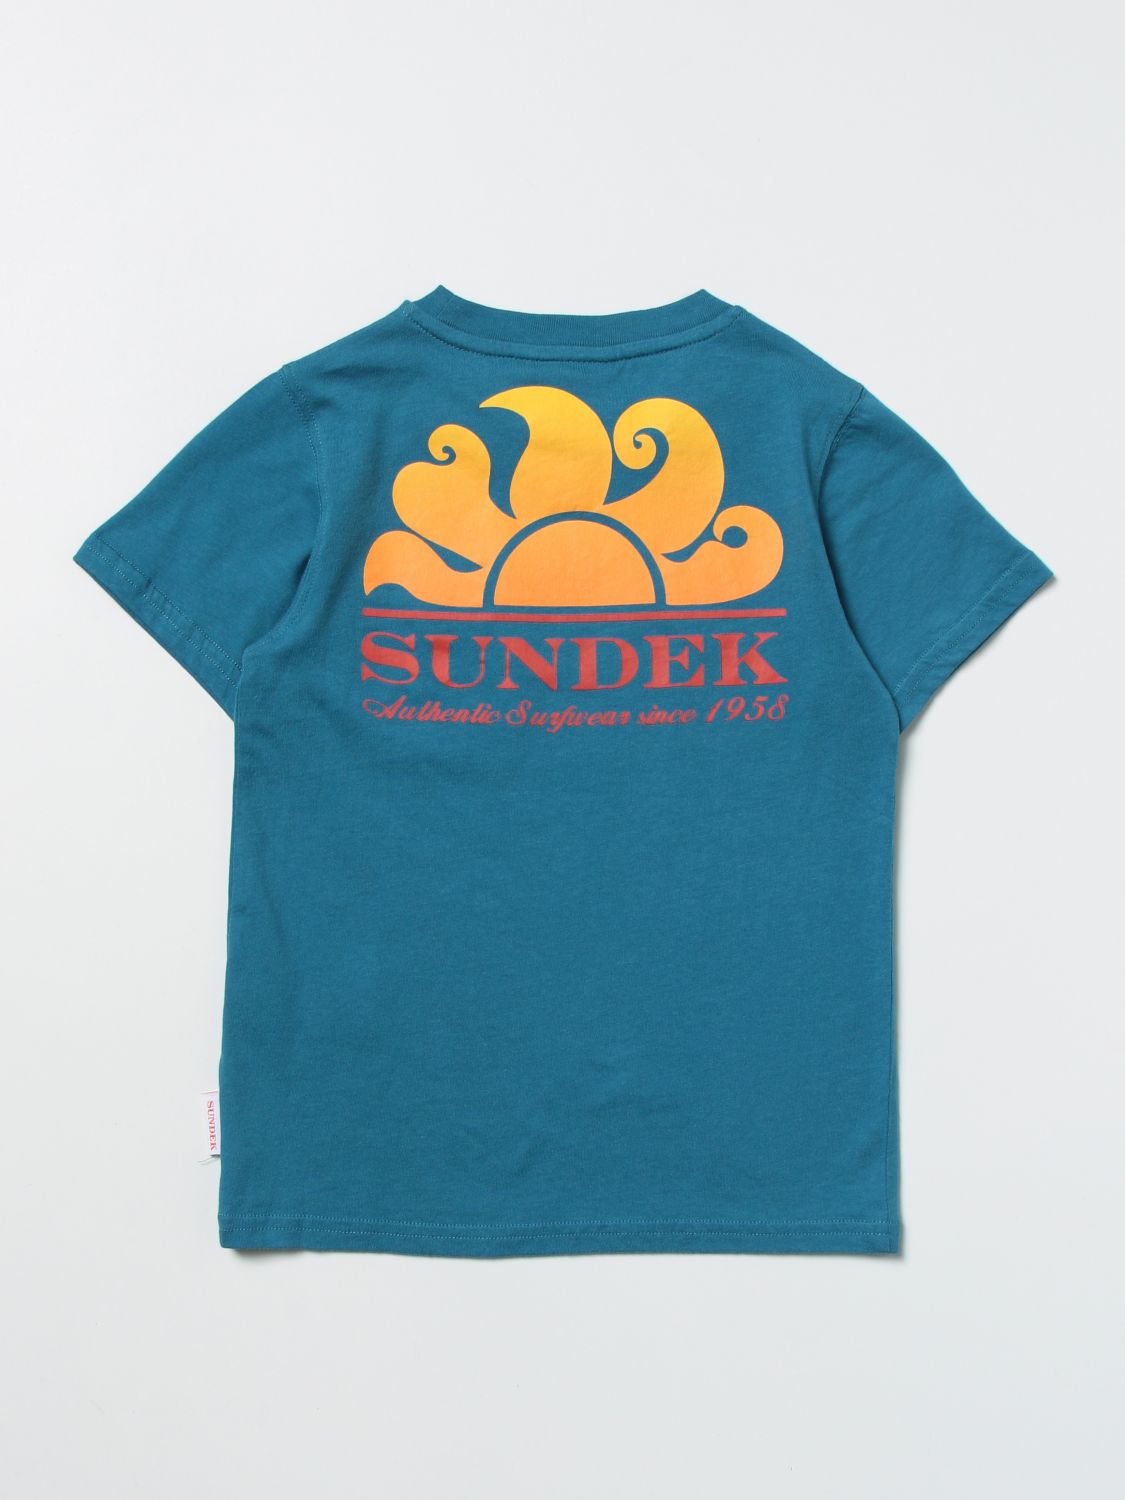 15987円 2021特集 SUNDEK T-shirts ボーイズ キッズ